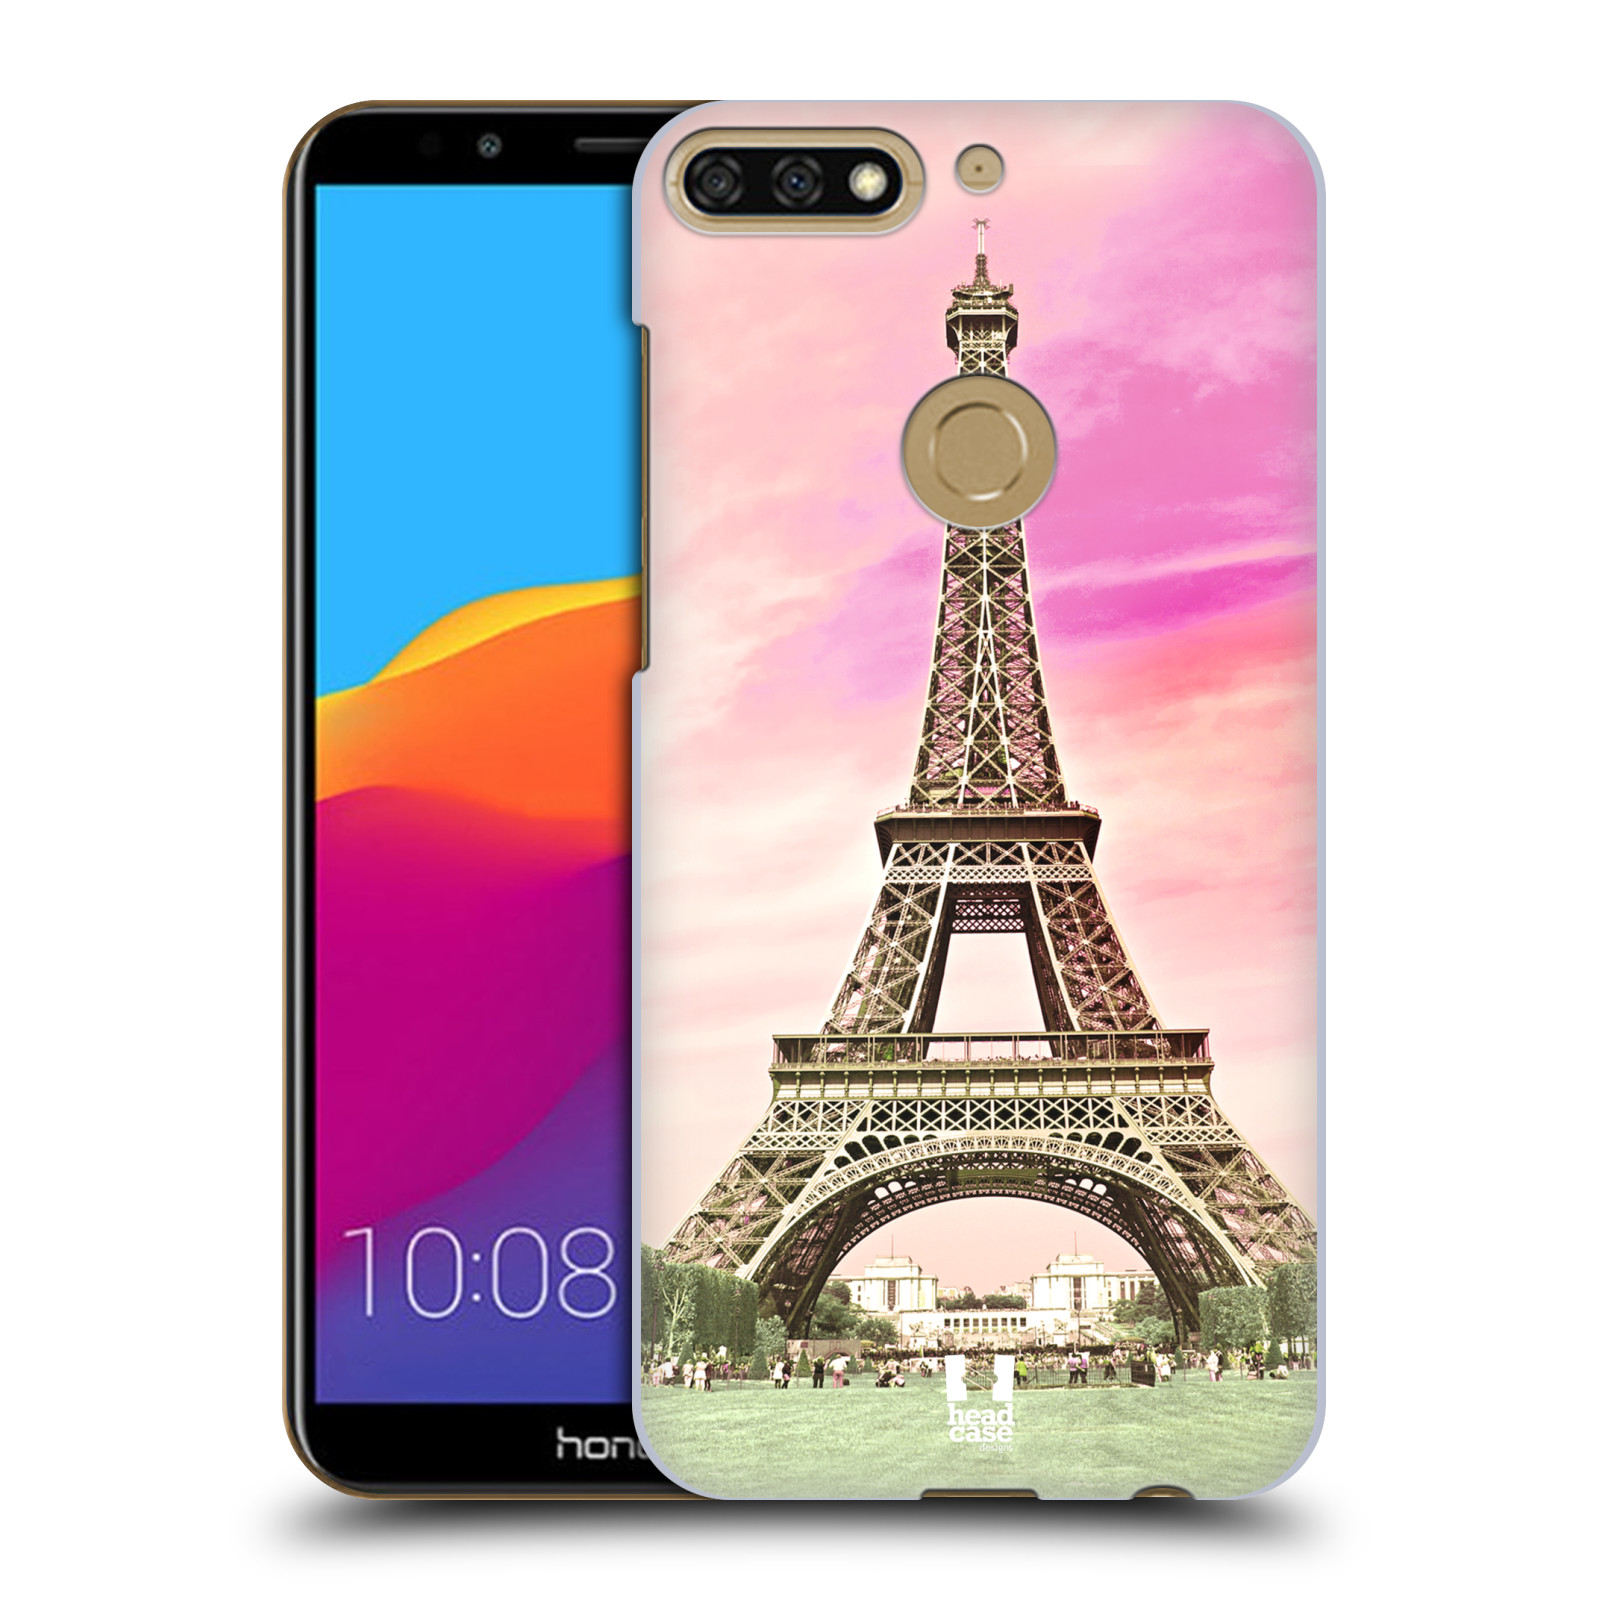 Pouzdro na mobil HONOR 7C - HEAD CASE - historická místa Eiffelova věž Paříž